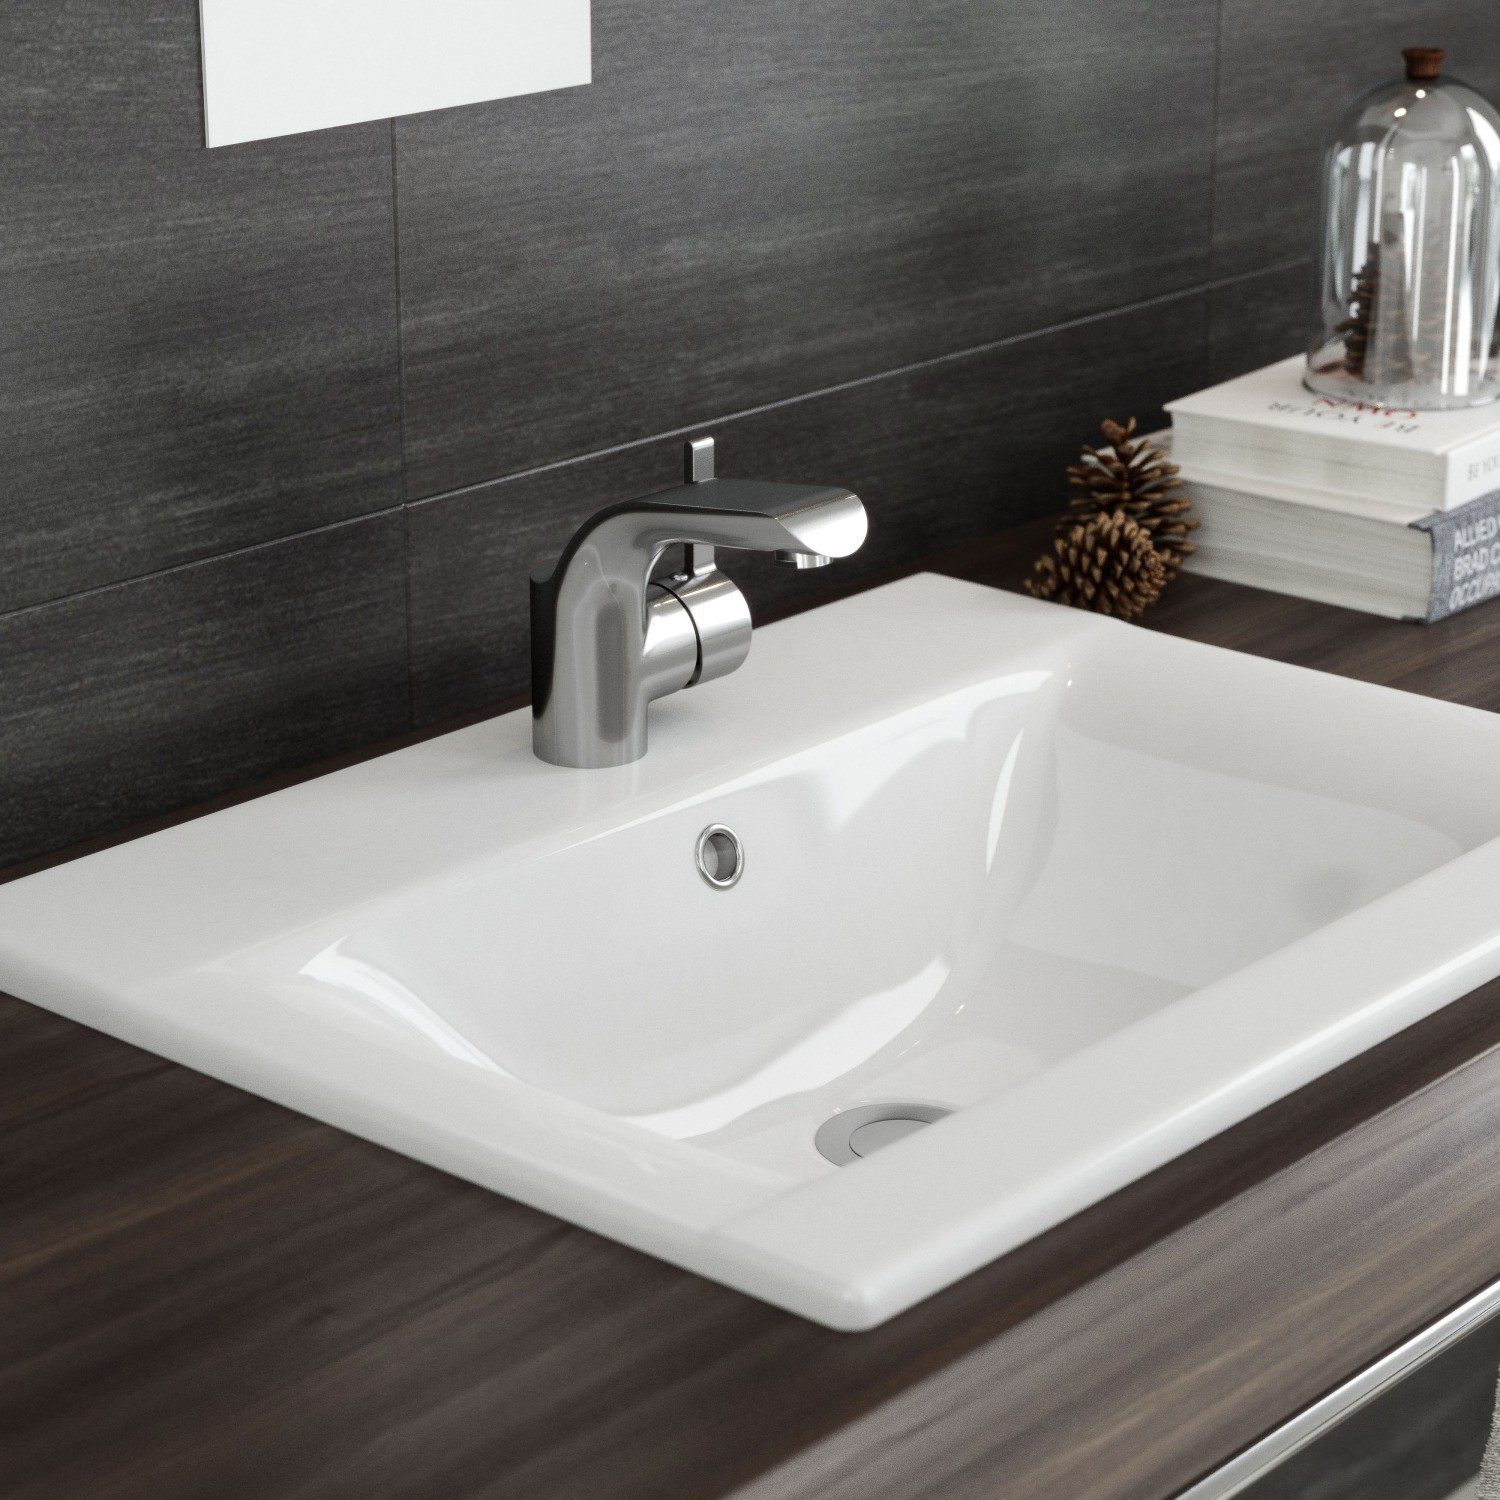 Змішувач для ванни і душу Cersanit Luvio S951-012 ціна 3669.00 грн - фотографія 2